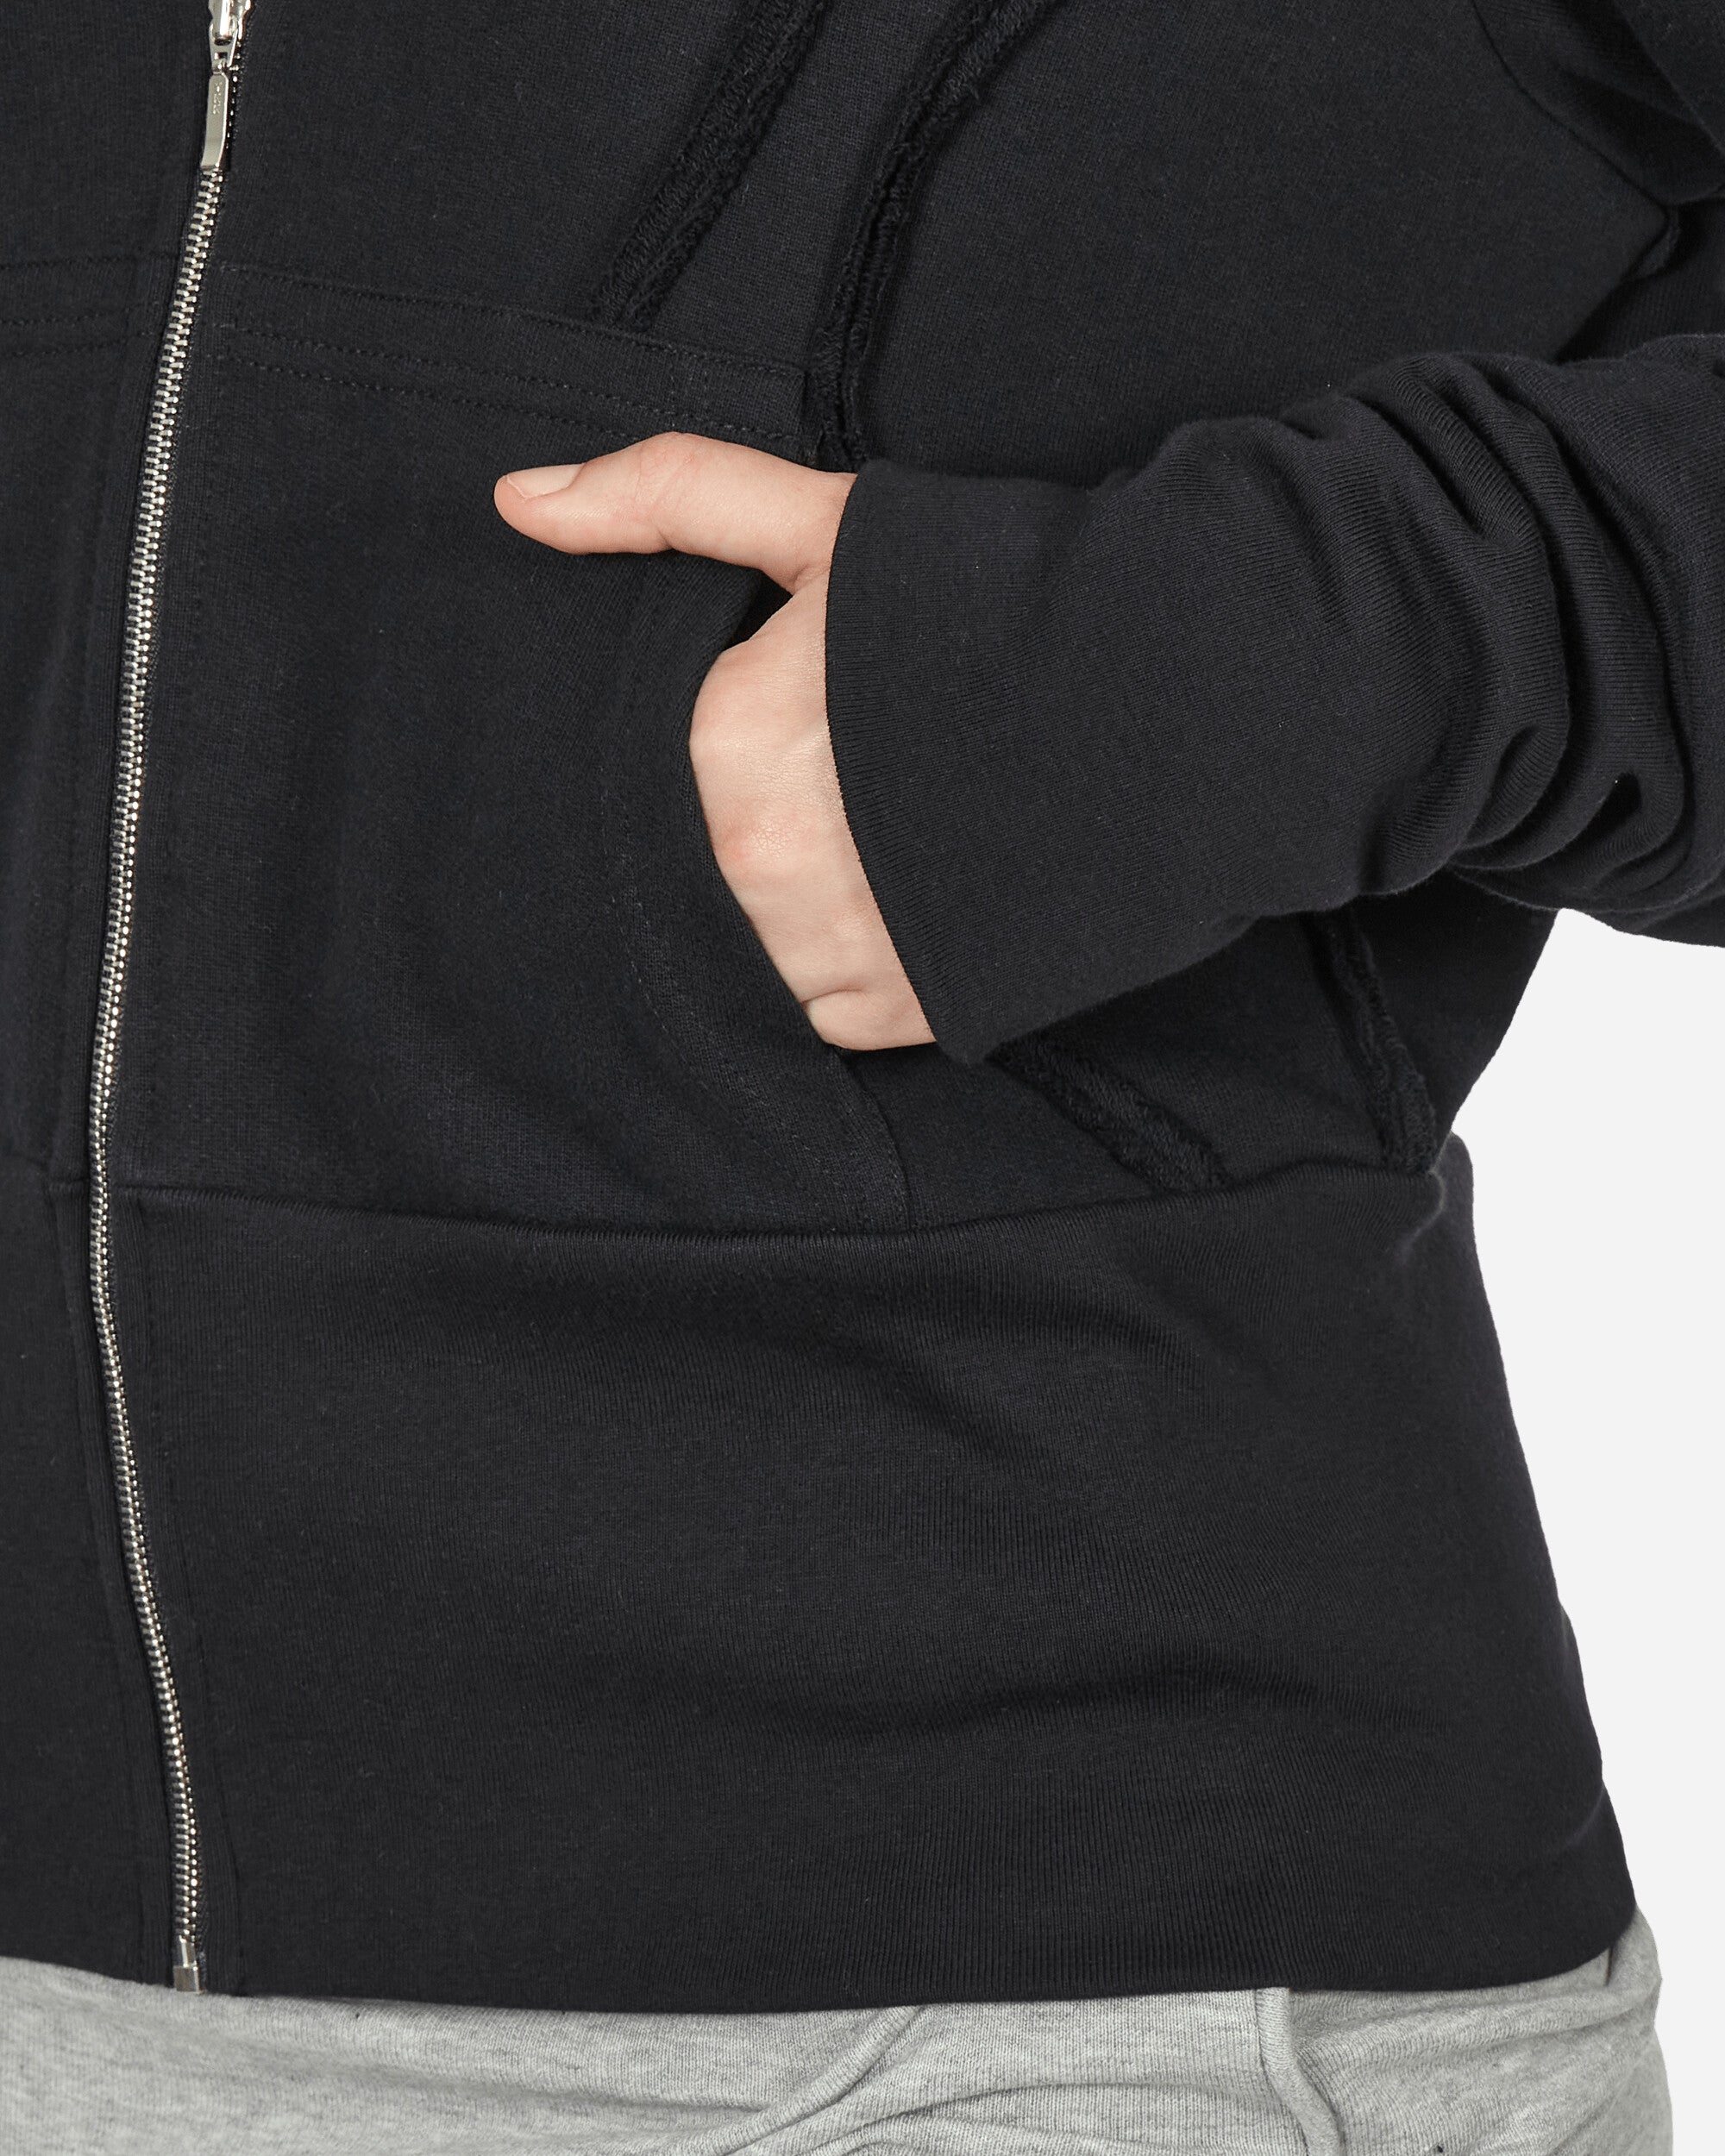 Mainline:RUS/Fr.CA/DE Zip Up Hoodie With Fraying Detail Black Sweatshirts Hoodies KIT 1